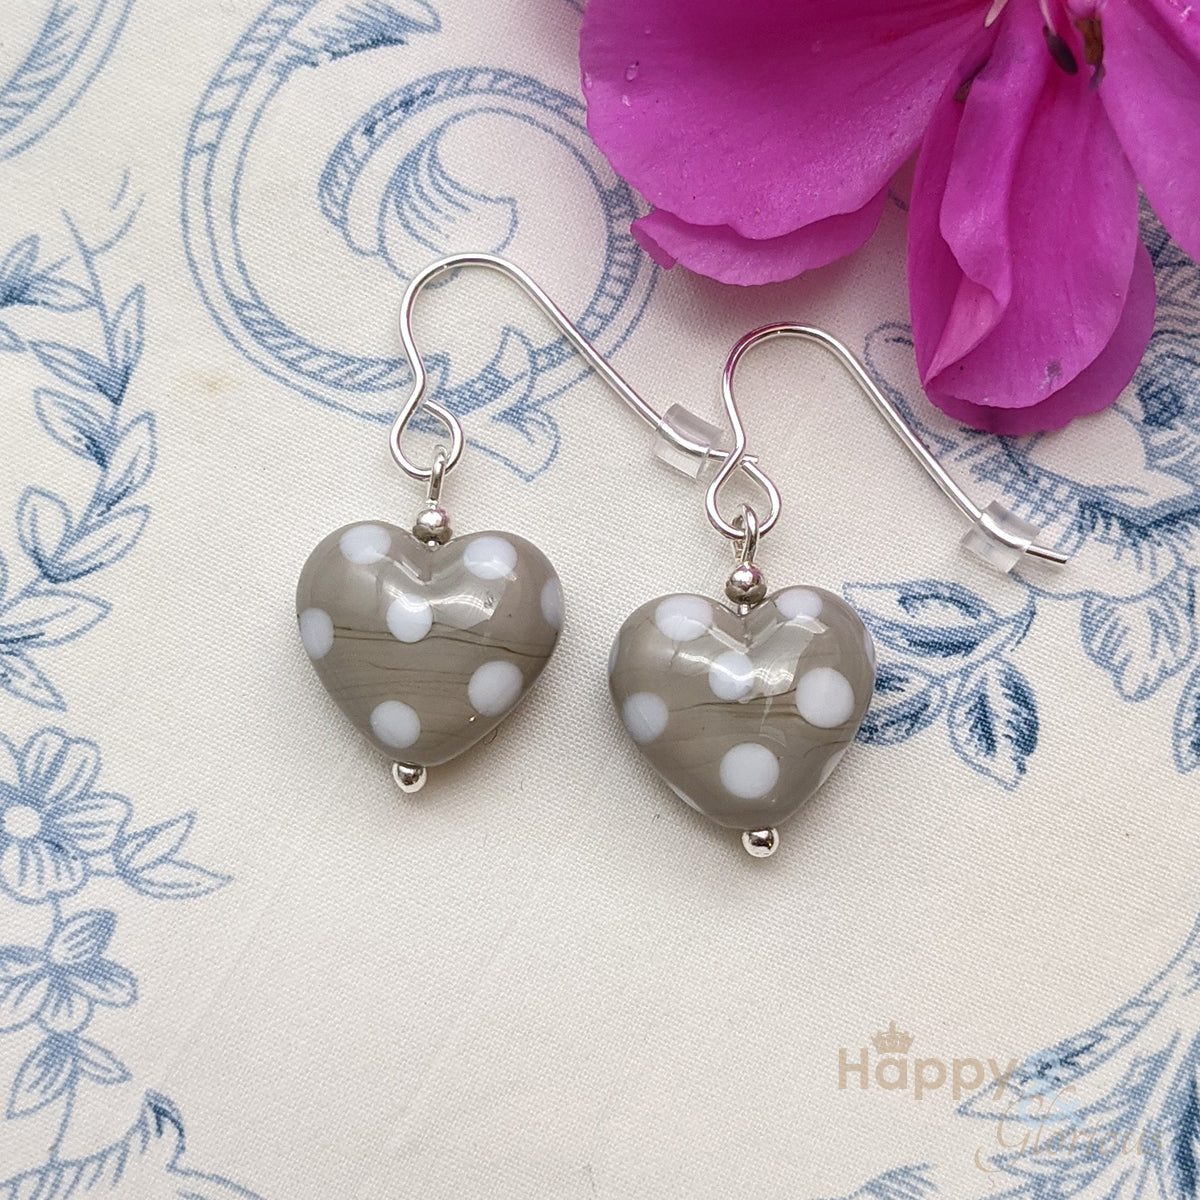 Grey & white spotty glass heart sterling silver earrings